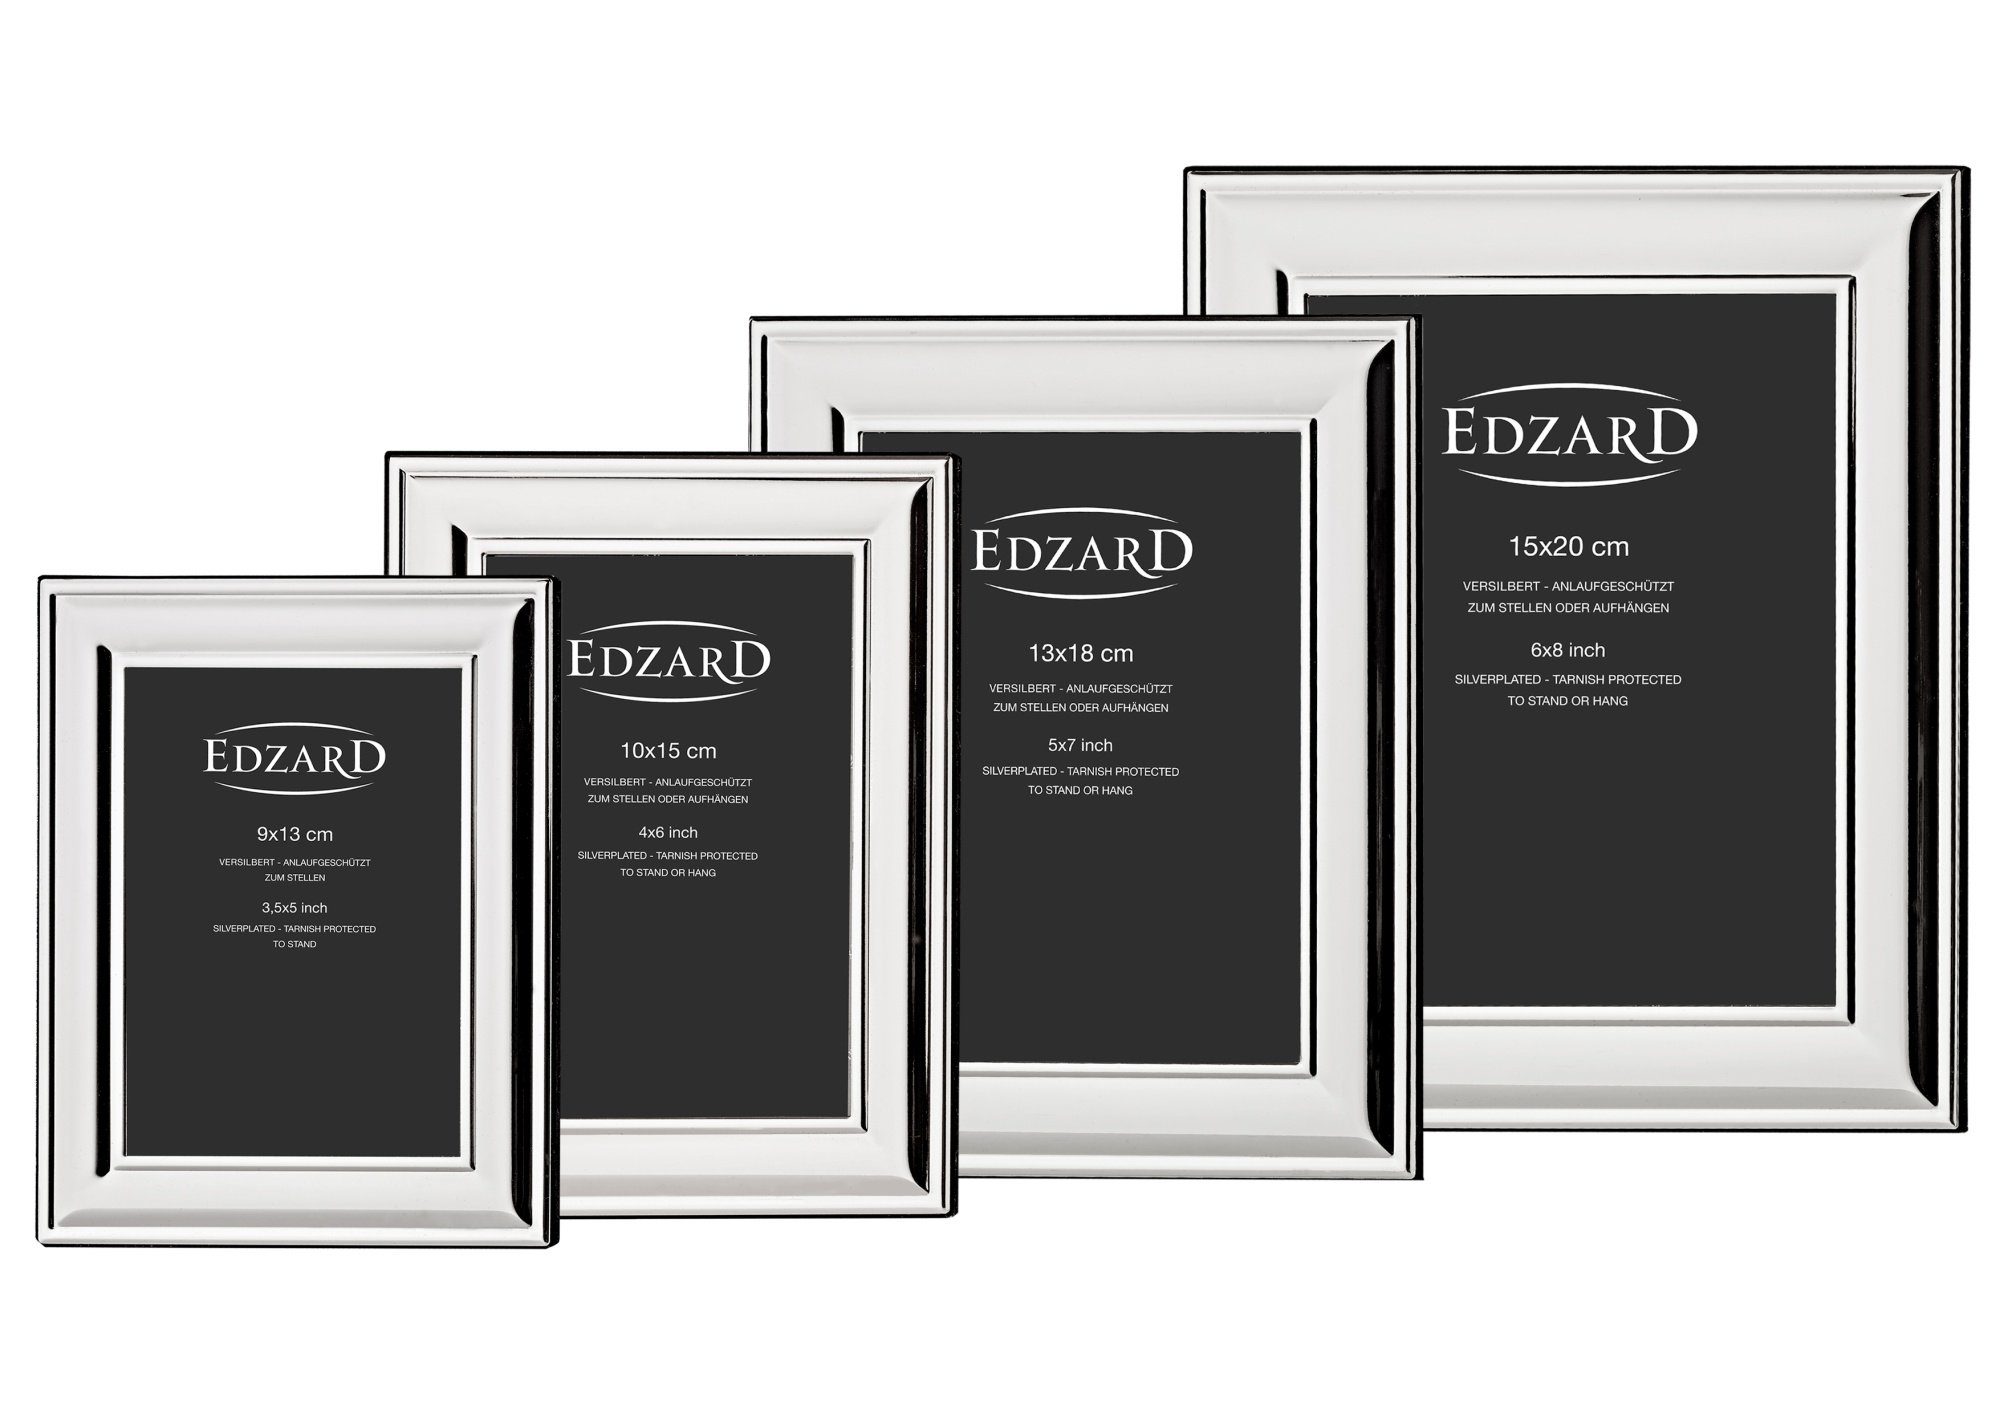 Fotorahmen cm für EDZARD Bilder 9x13 – versilbert anlaufgeschützt, Sunset, Bilderrahmen und